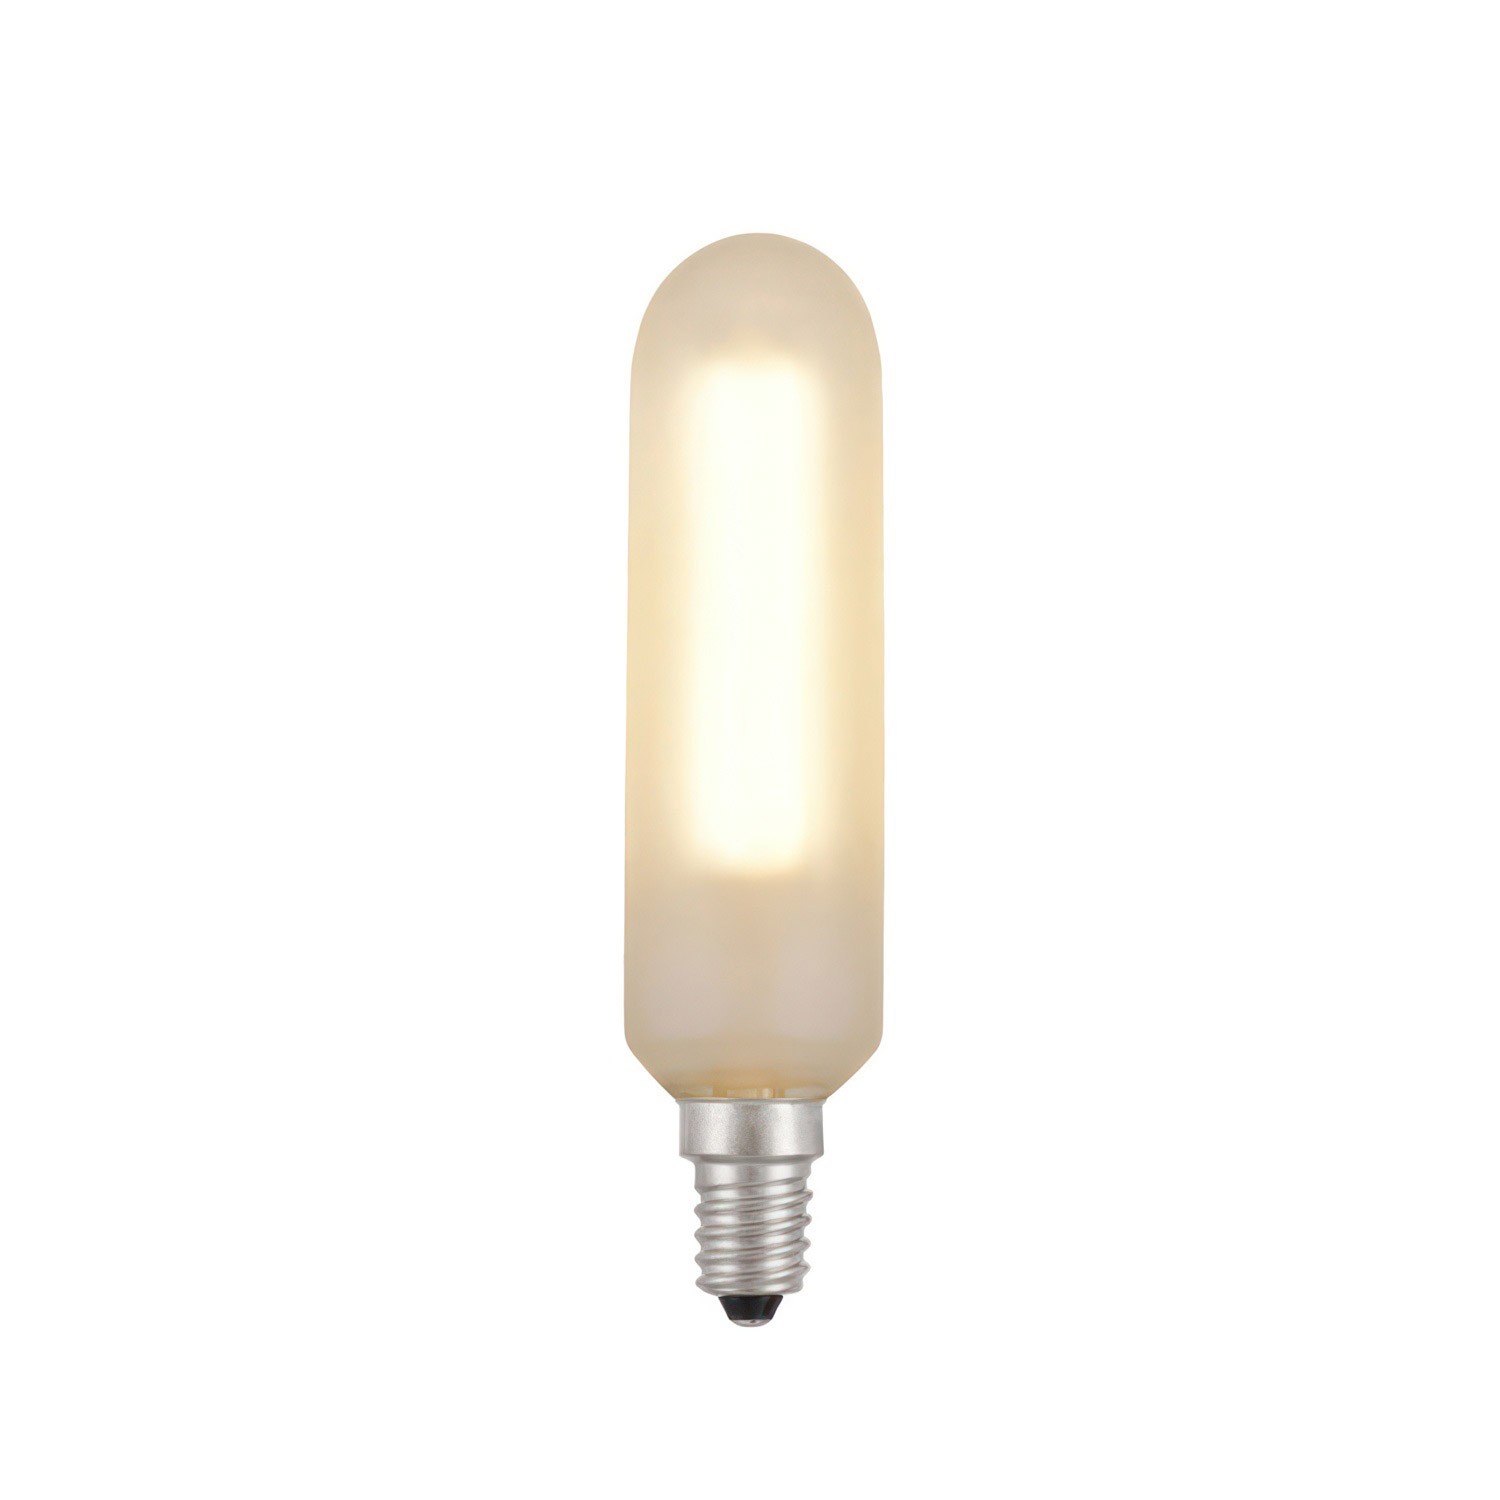 Ampoule LED tubulaire, blanc satiné - E14 4W Dimmable 2700K